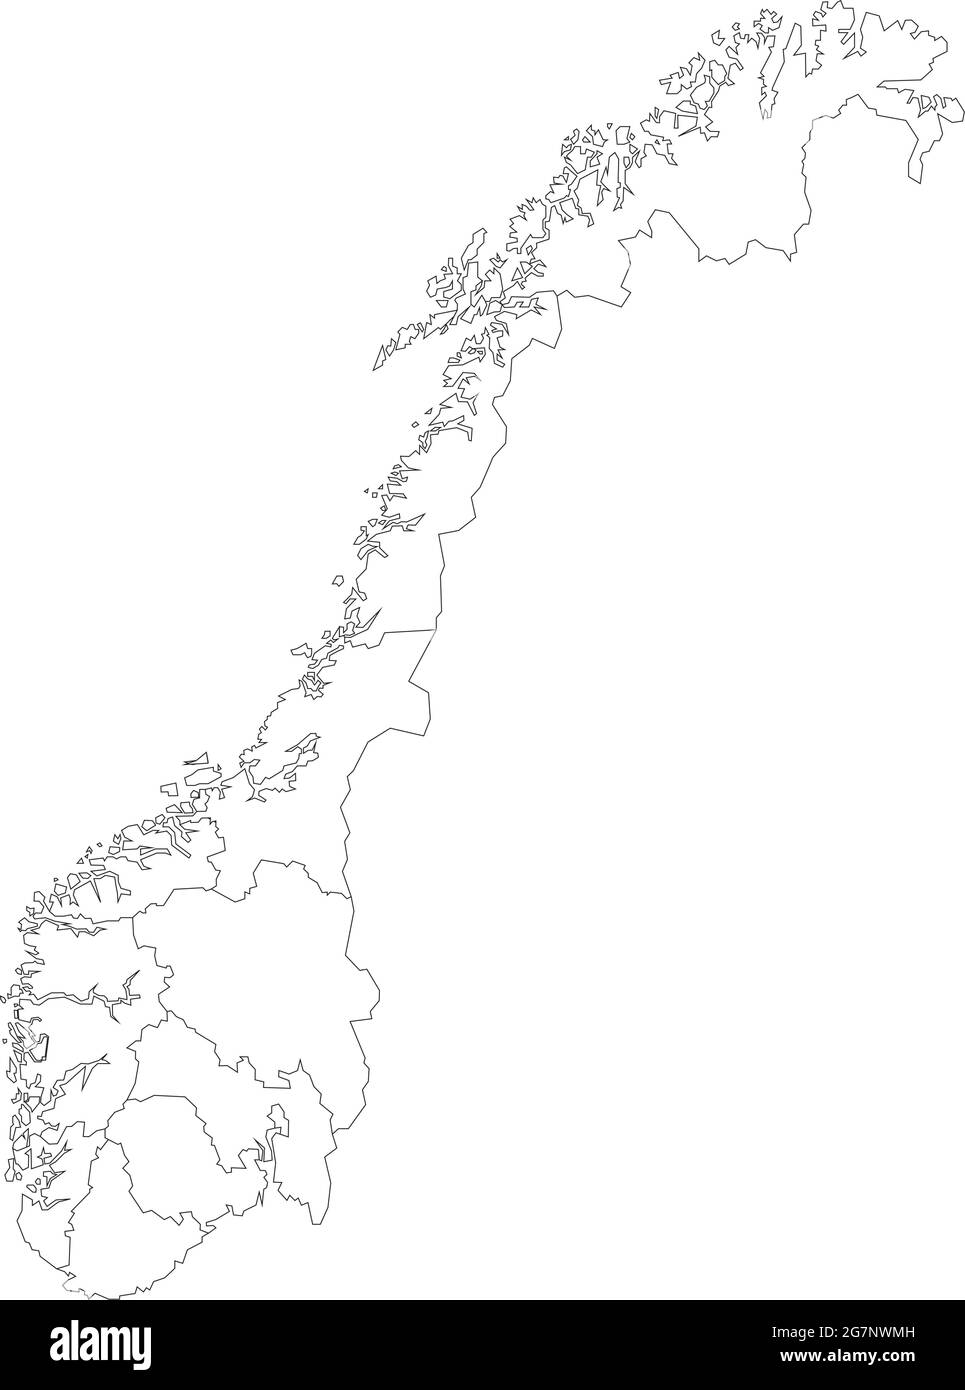 Vektorkarte von Norwegen, farblos mit Umriss, schwarz und weiß zu studieren Stock Vektor